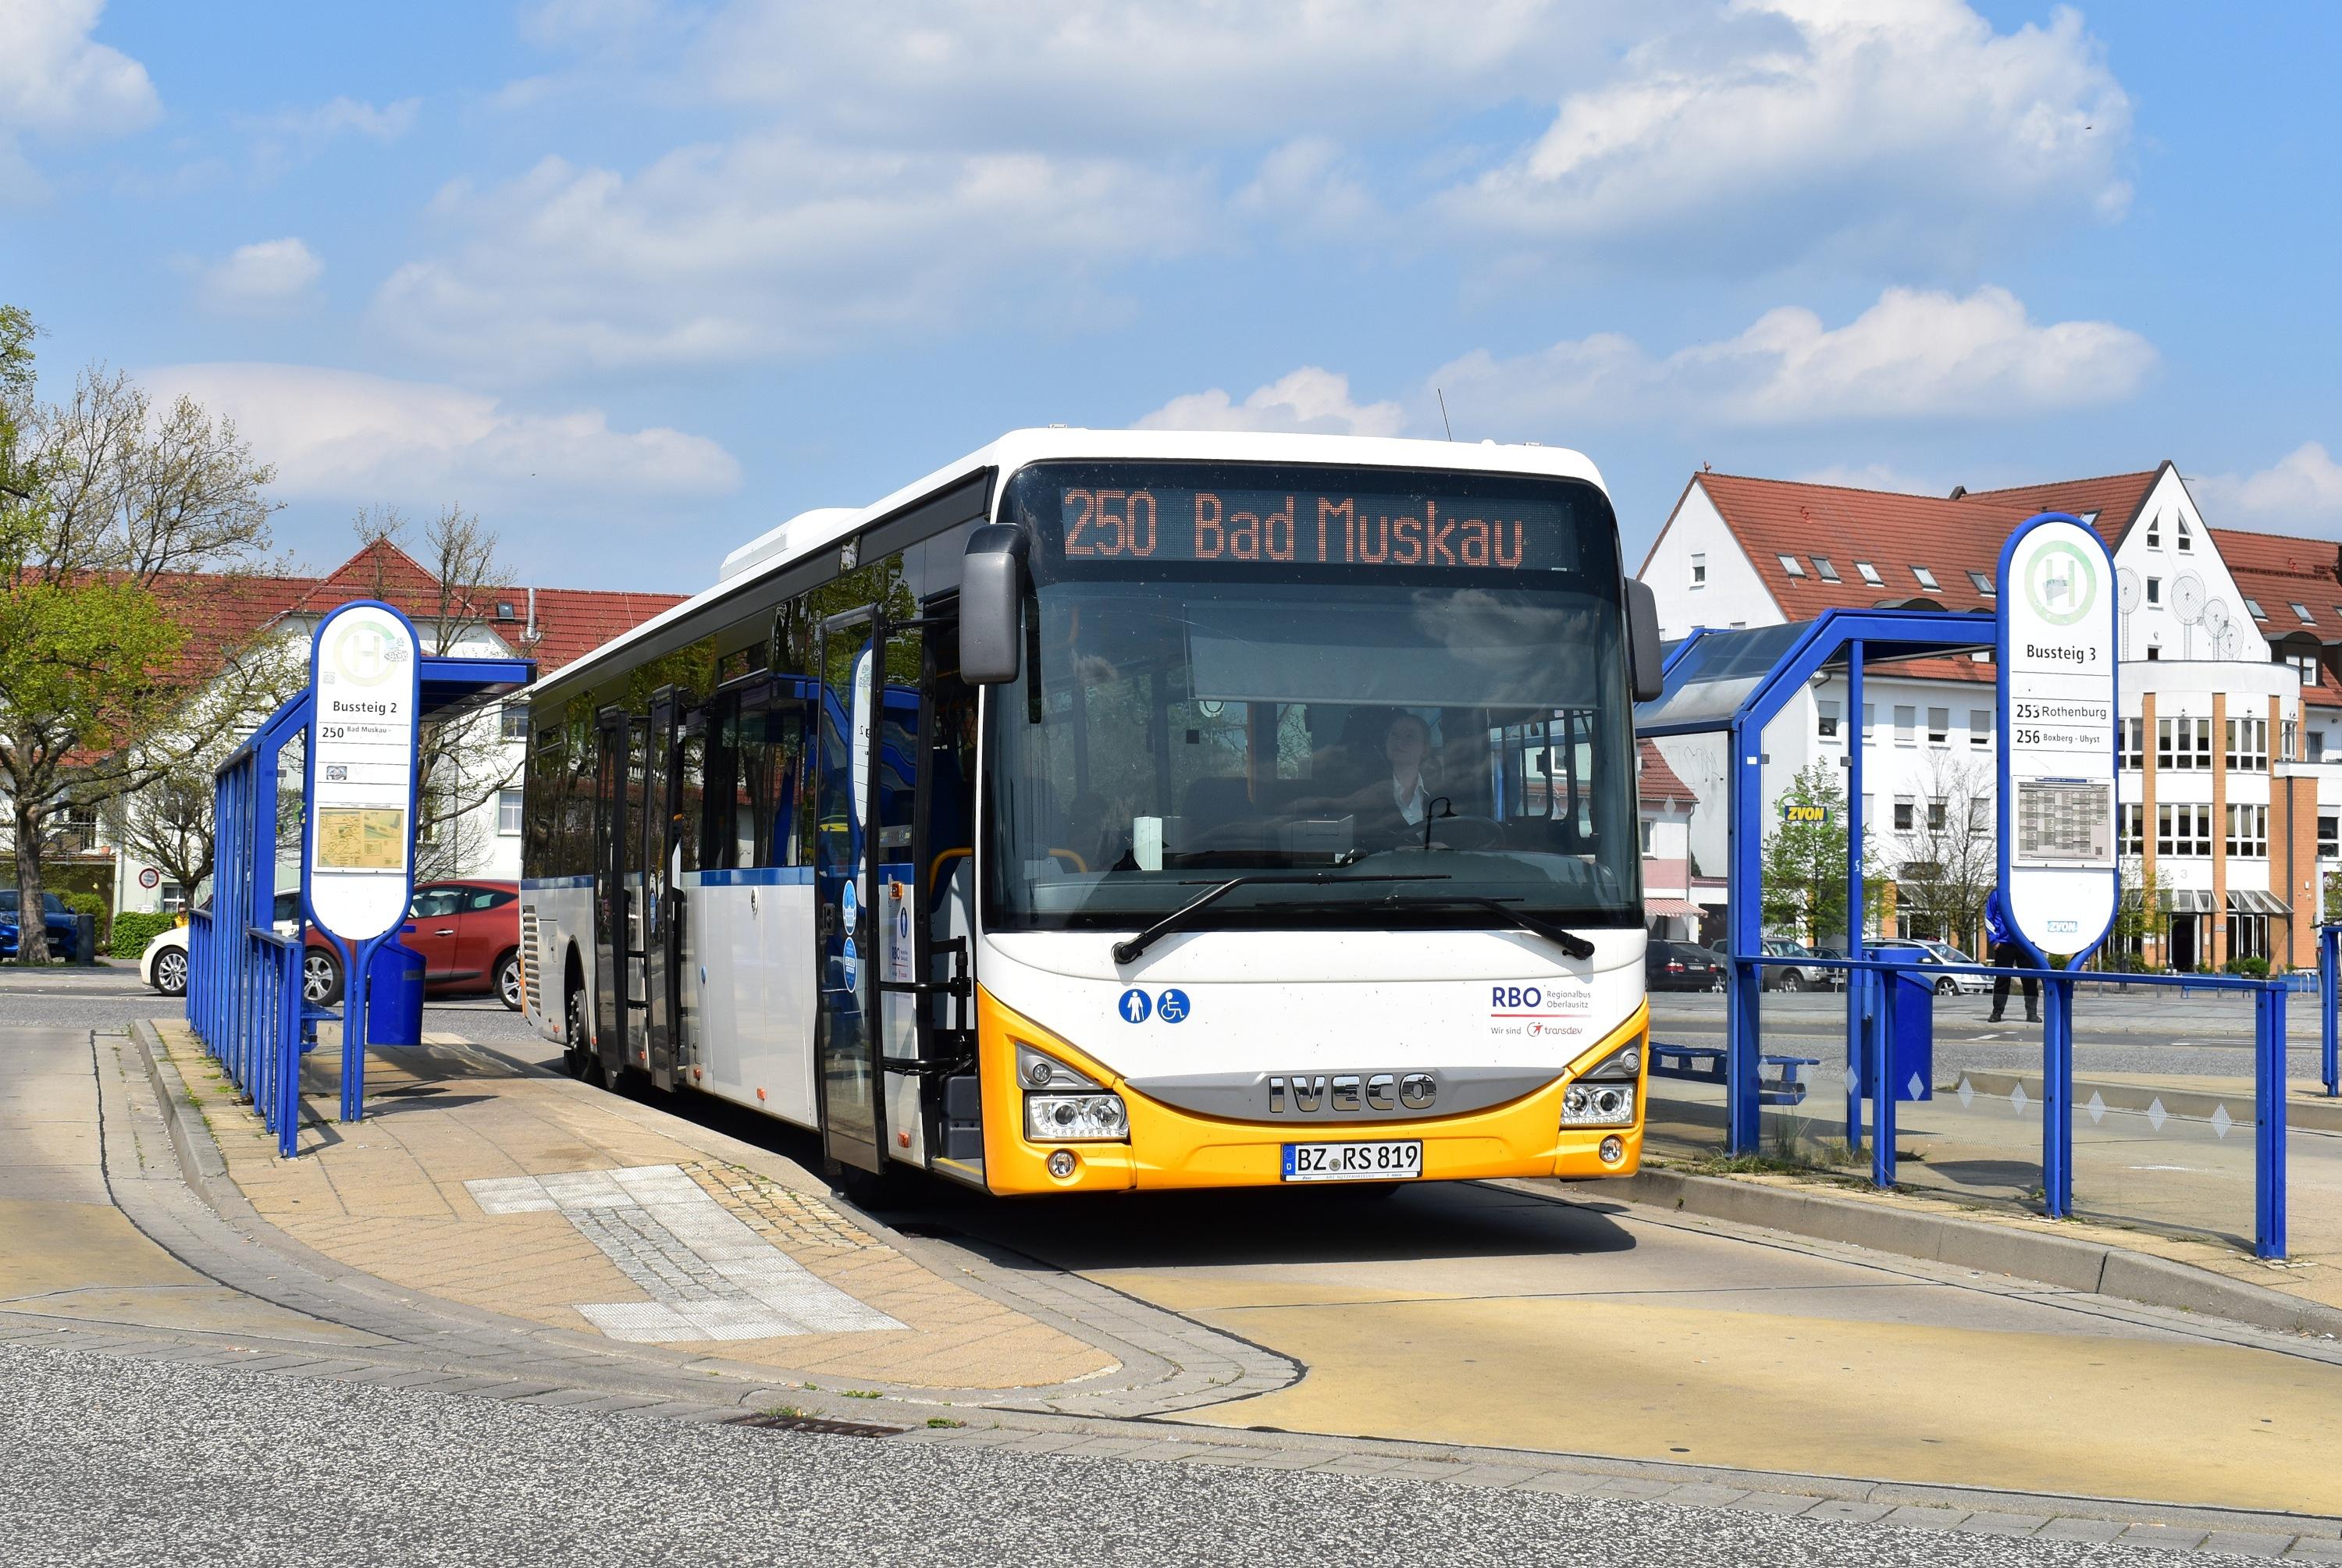 250 Bad Muskau-Papierfabrik Weißwasser Bahnhof/Busbahnhof